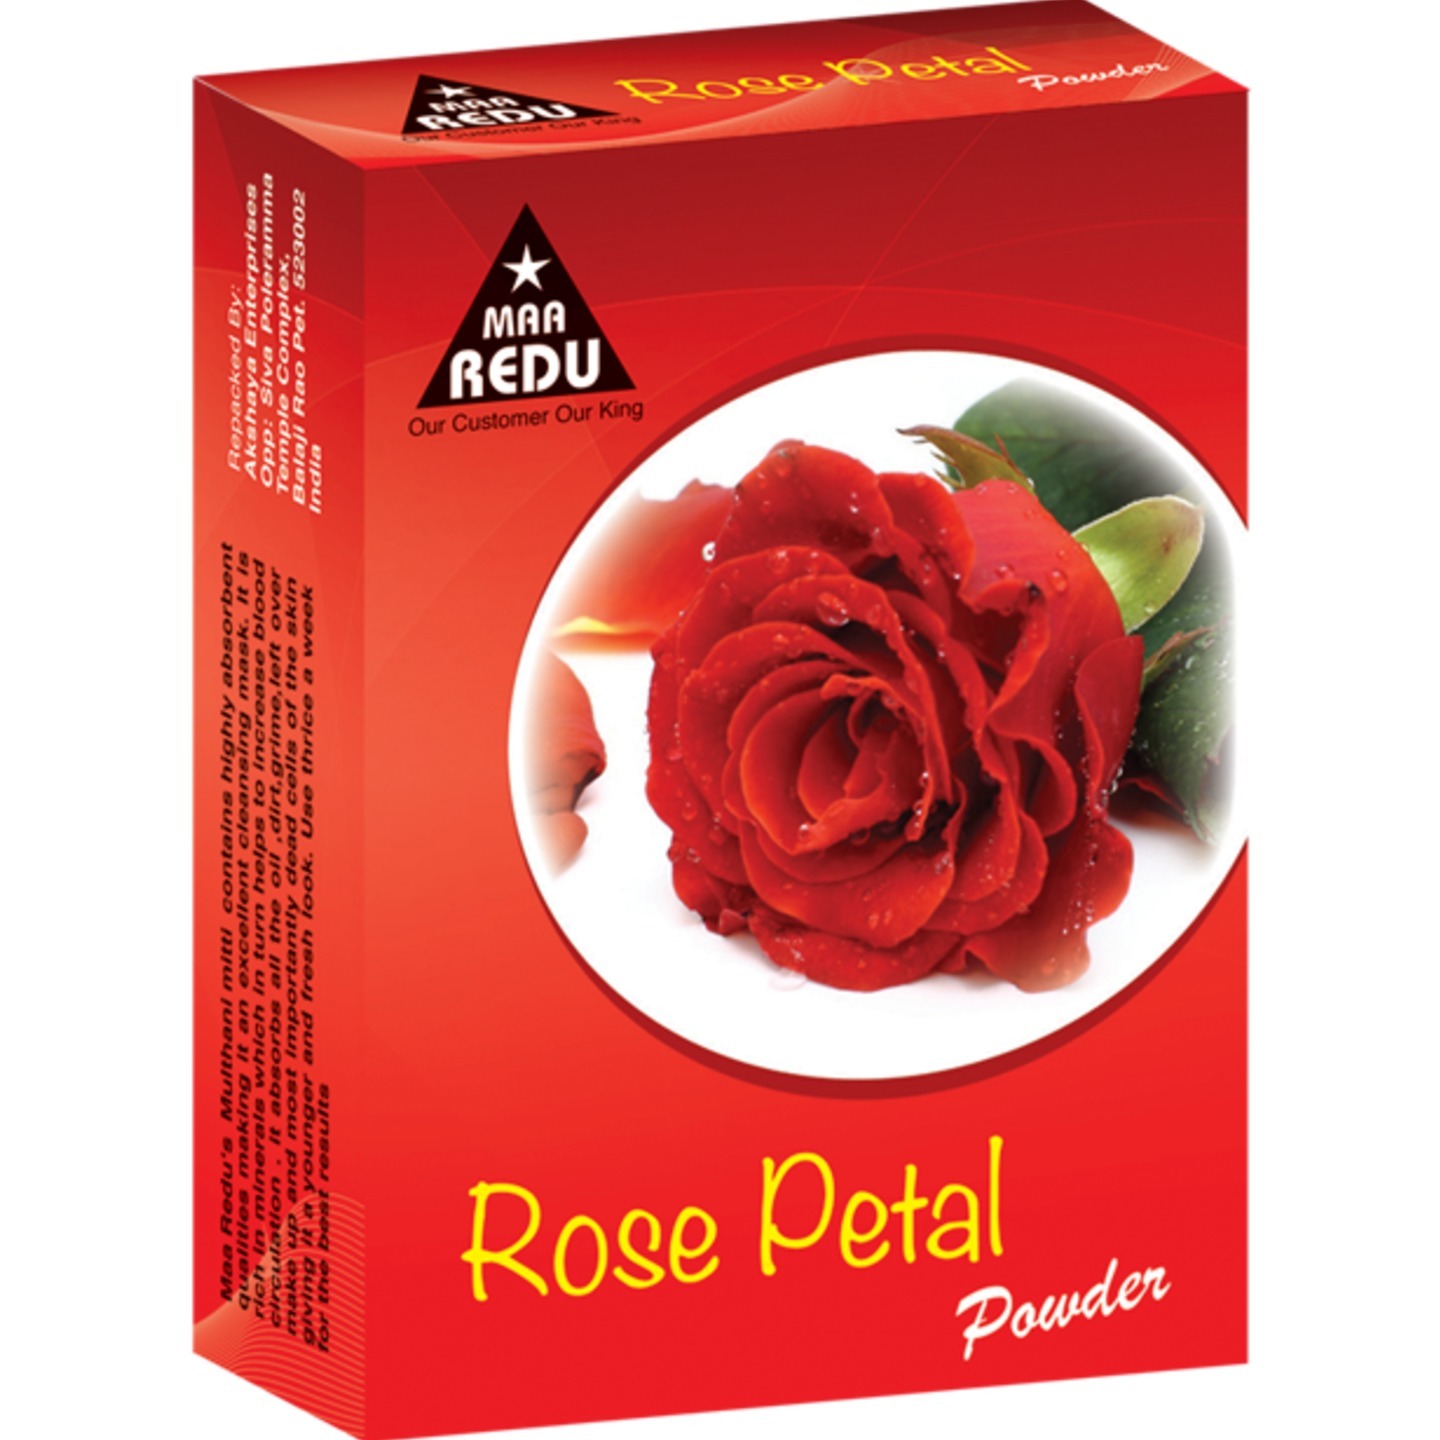 Maa Redu's Rose Petals Powder (Face Pack)- 1 Dozen